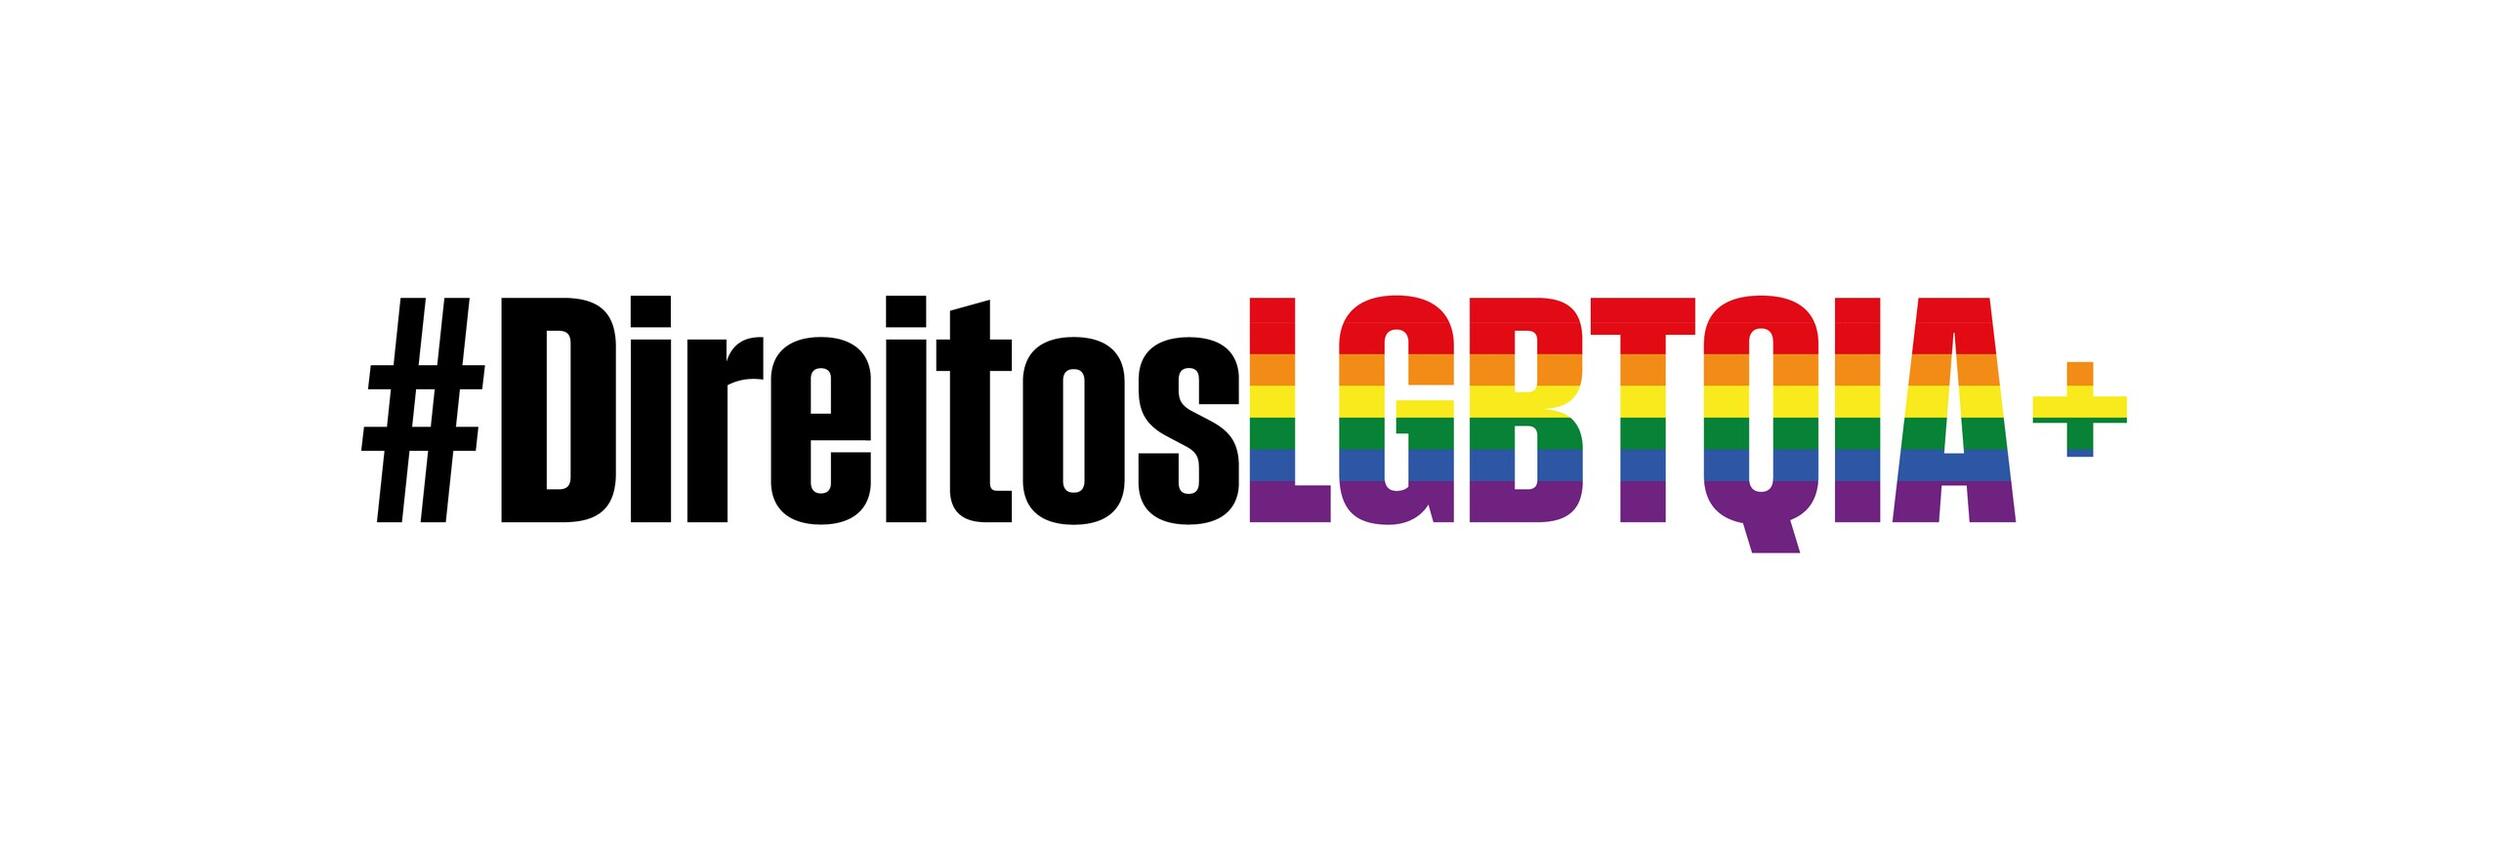 Dia Internacional Contra a Homofobia, Transfobia e Bifobia - 17 de maio